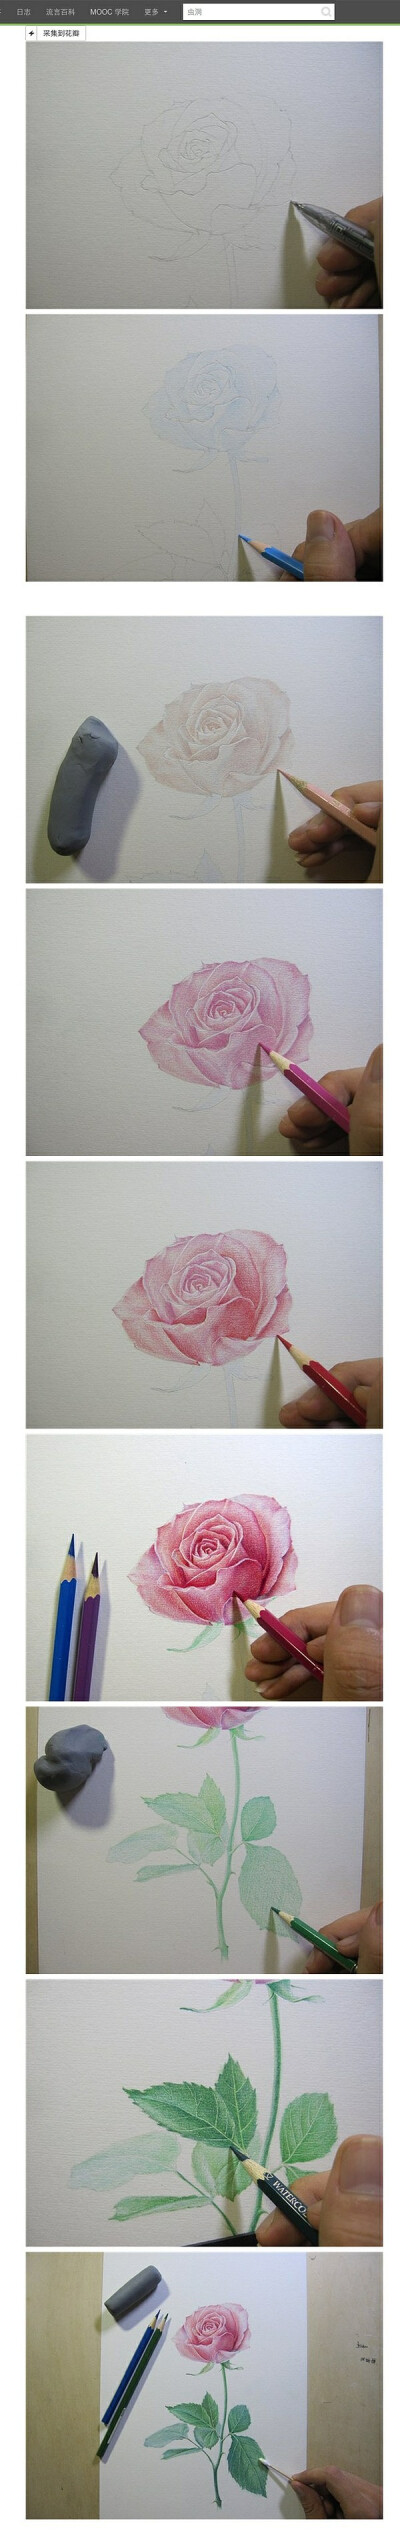 【绘画教程】玫瑰的彩铅教程